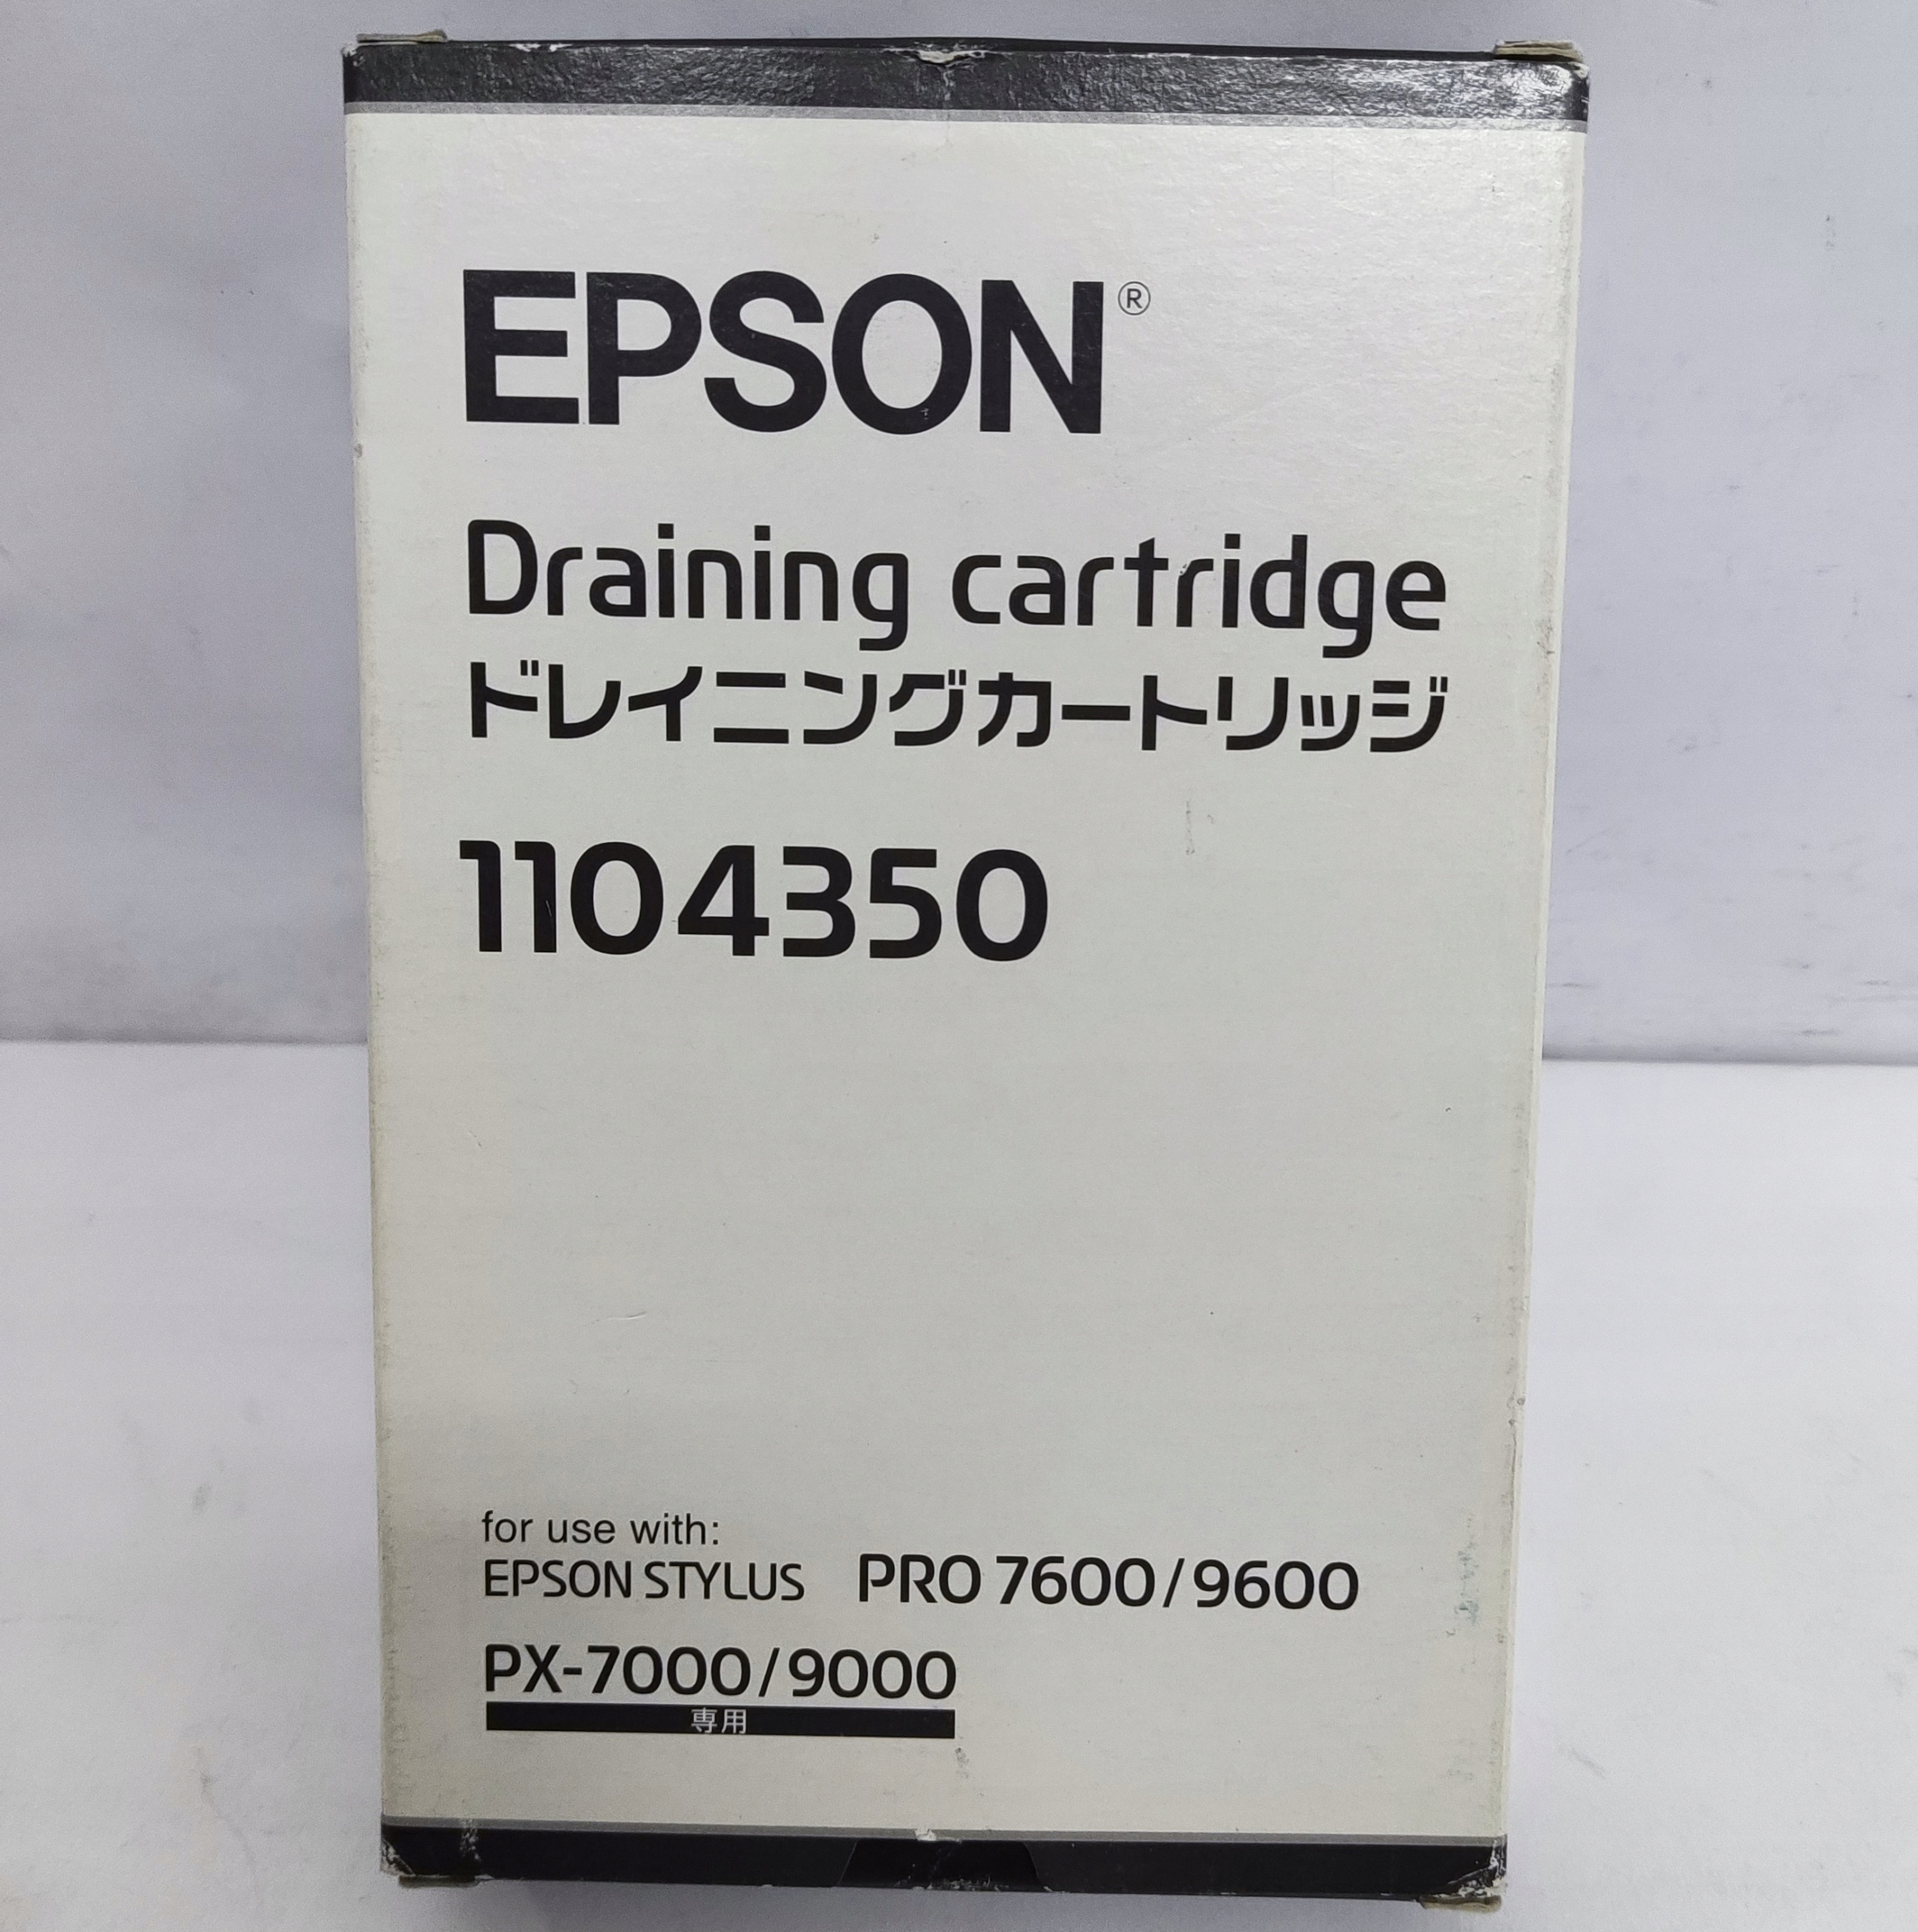 Картридж для слива Epson 1104350 Stylus Pro 7600